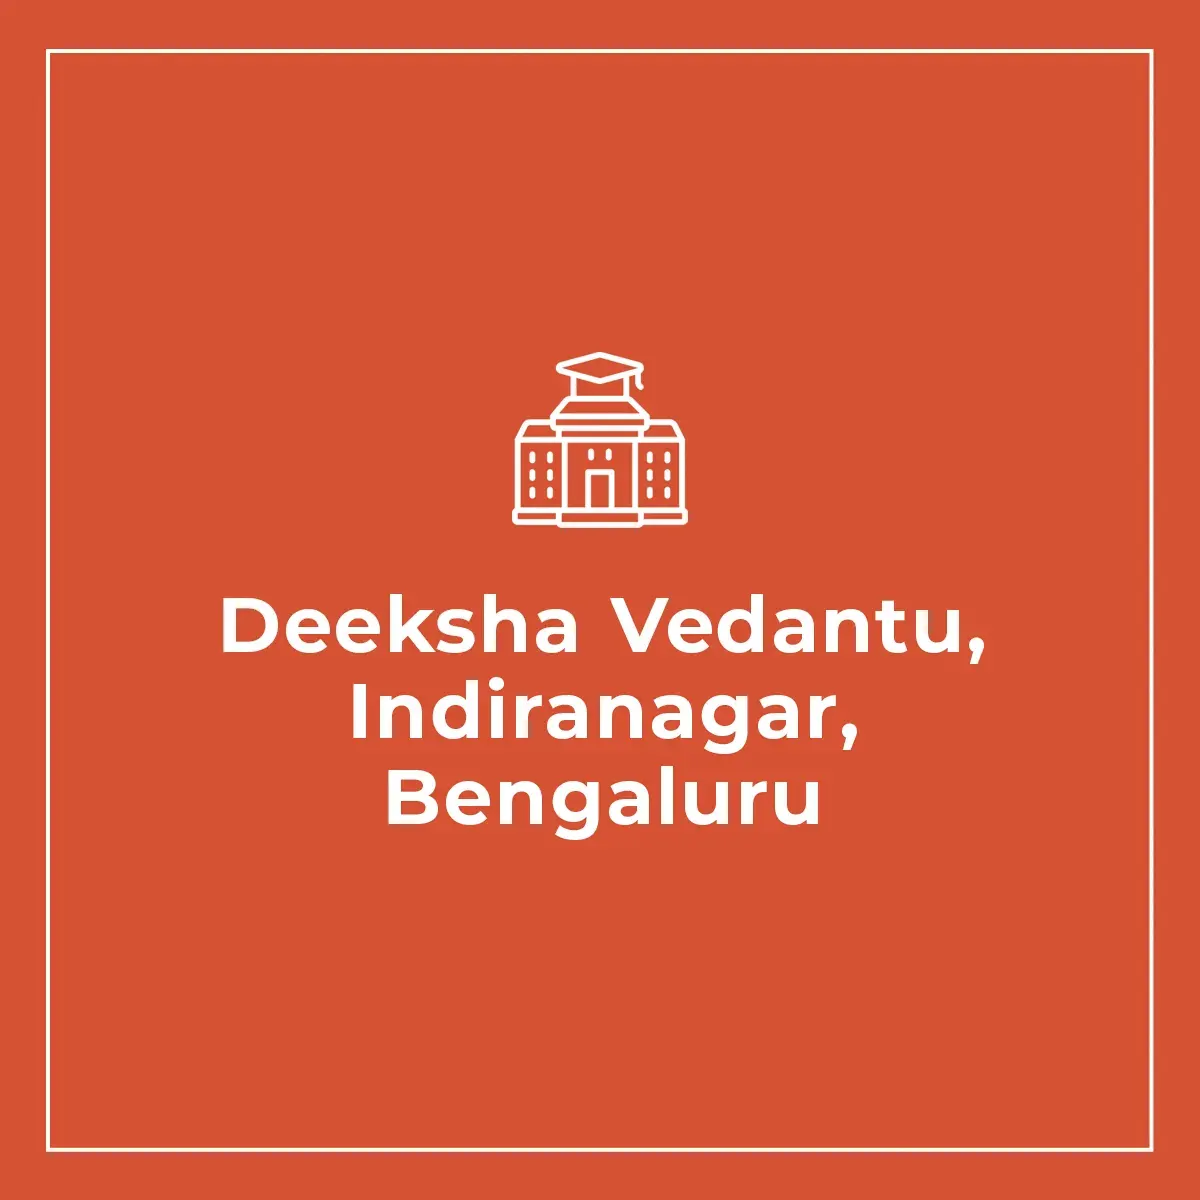 Deeksha Vedantu, Indiranagar, Bengaluru